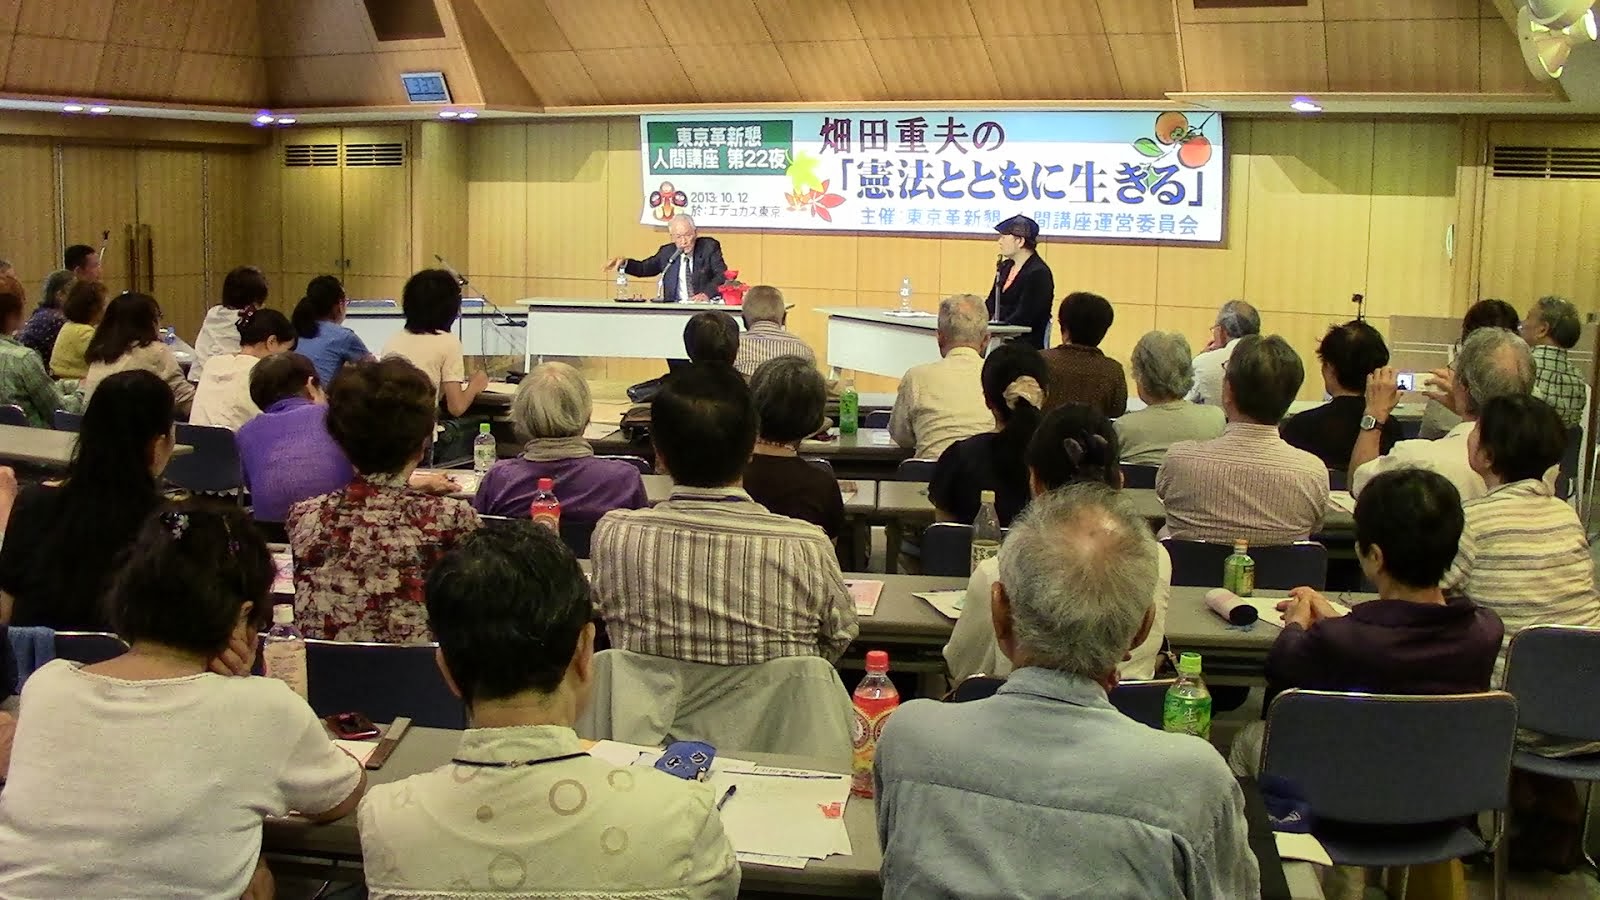 畑田重夫の人間講座「憲法とともに生きる」に120人